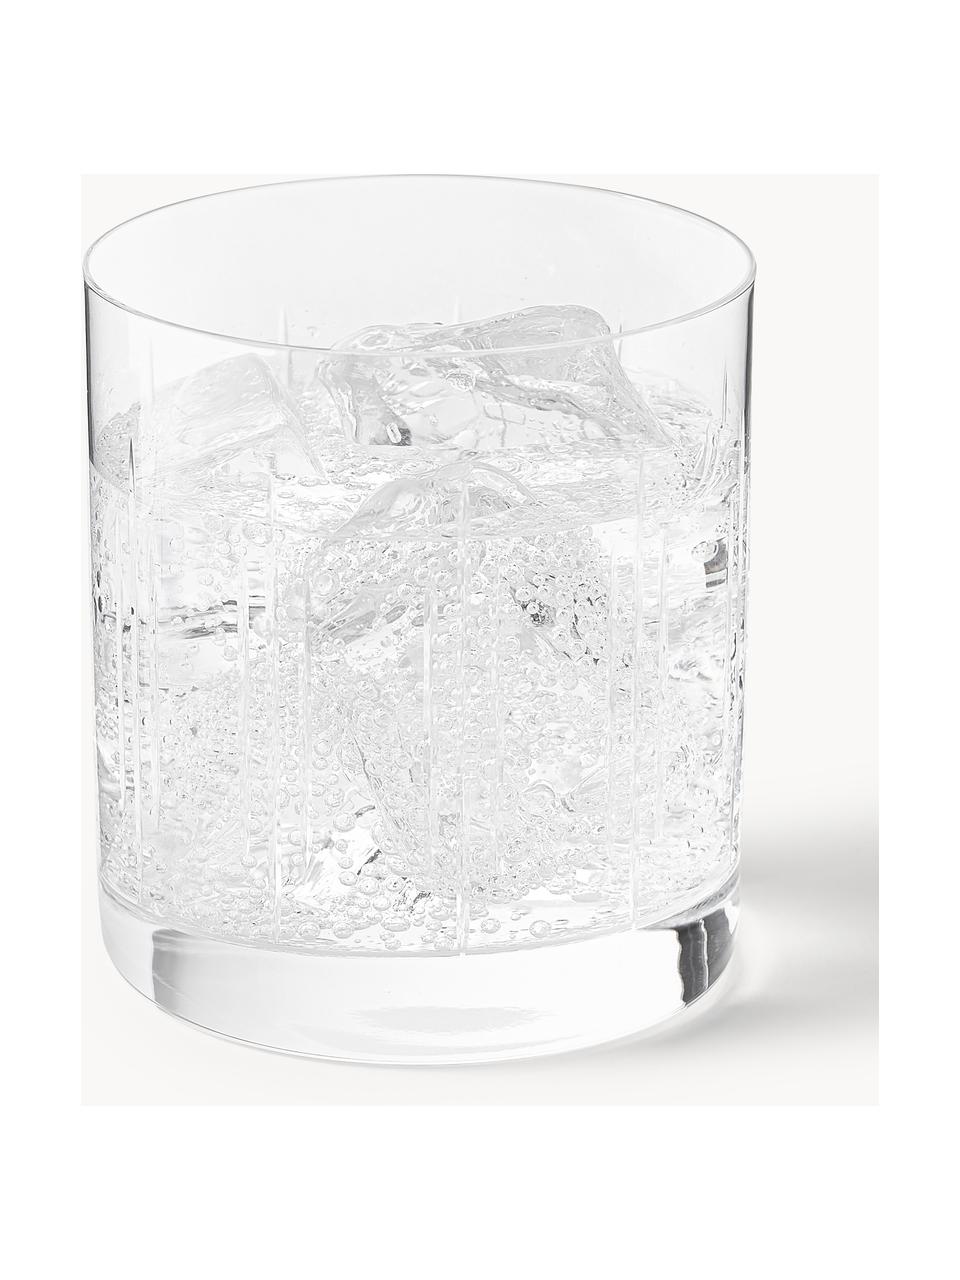 Waterglazen Felipe van kristalglas, 4 stuks, Crystal glas/kristalglas, Transparant, Ø 8 x H 9 cm, 280 ml